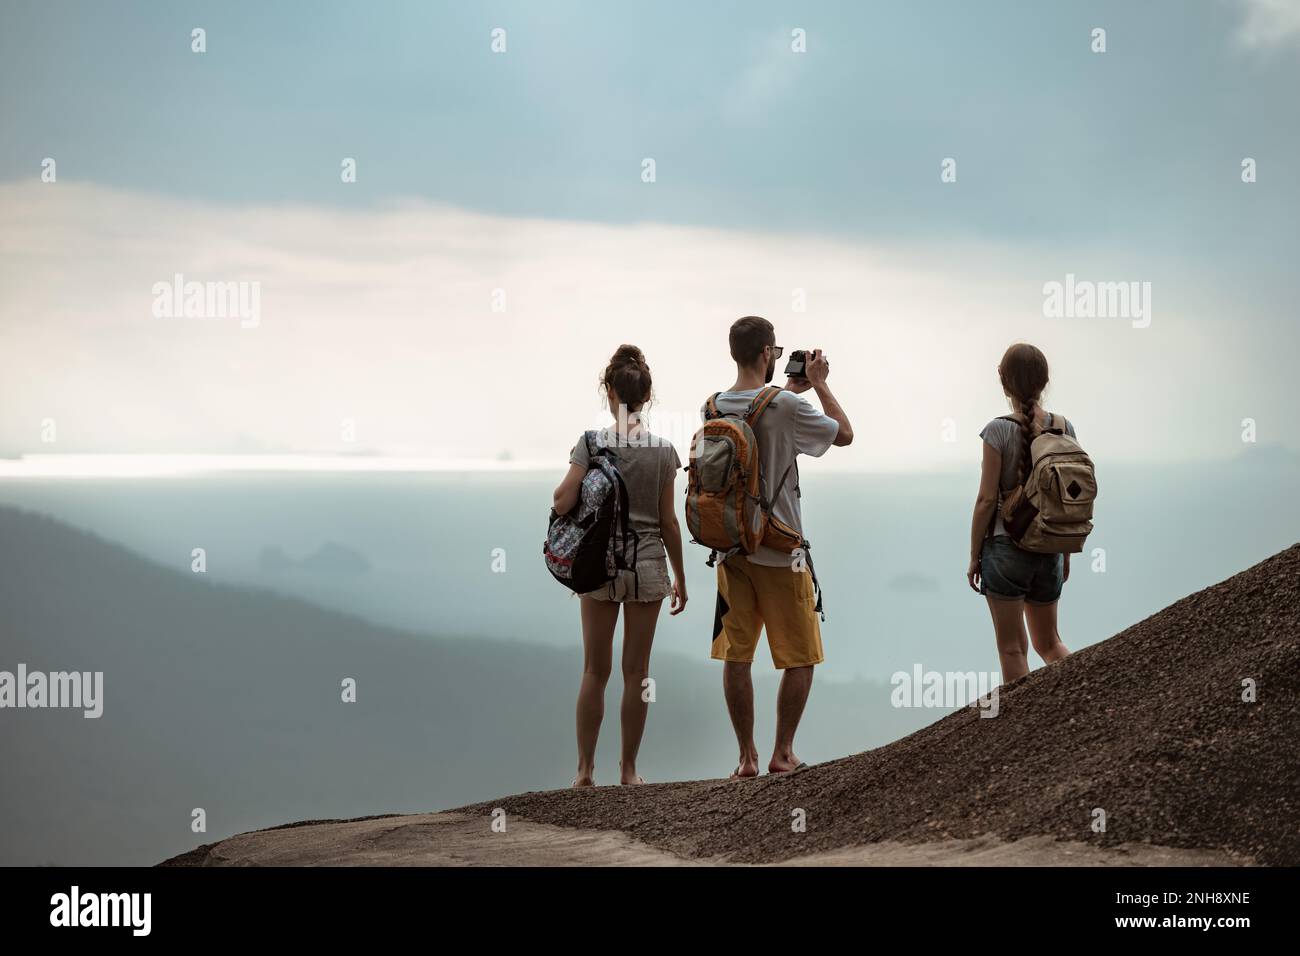 Drei junge Touristen mit Rucksäcken stehen auf dem Gipfel des Berges und blicken auf das Meer Stockfoto